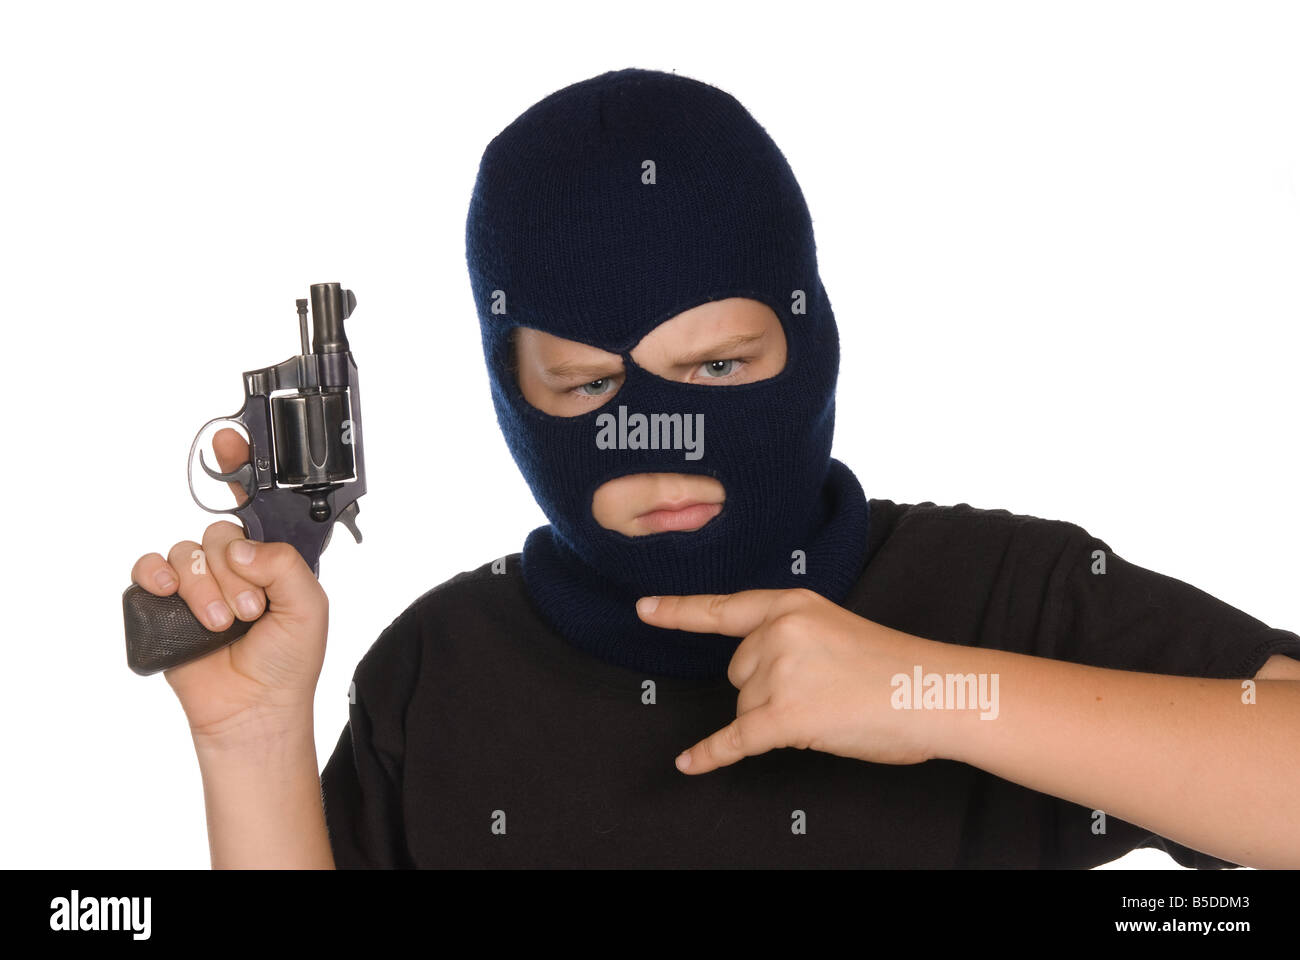 Ein kleiner Junge blinkt seine Bande Zeichen und Waffe, um zu zeigen, sein Engagement für Kriminalität und schlechte Wege Stockfoto